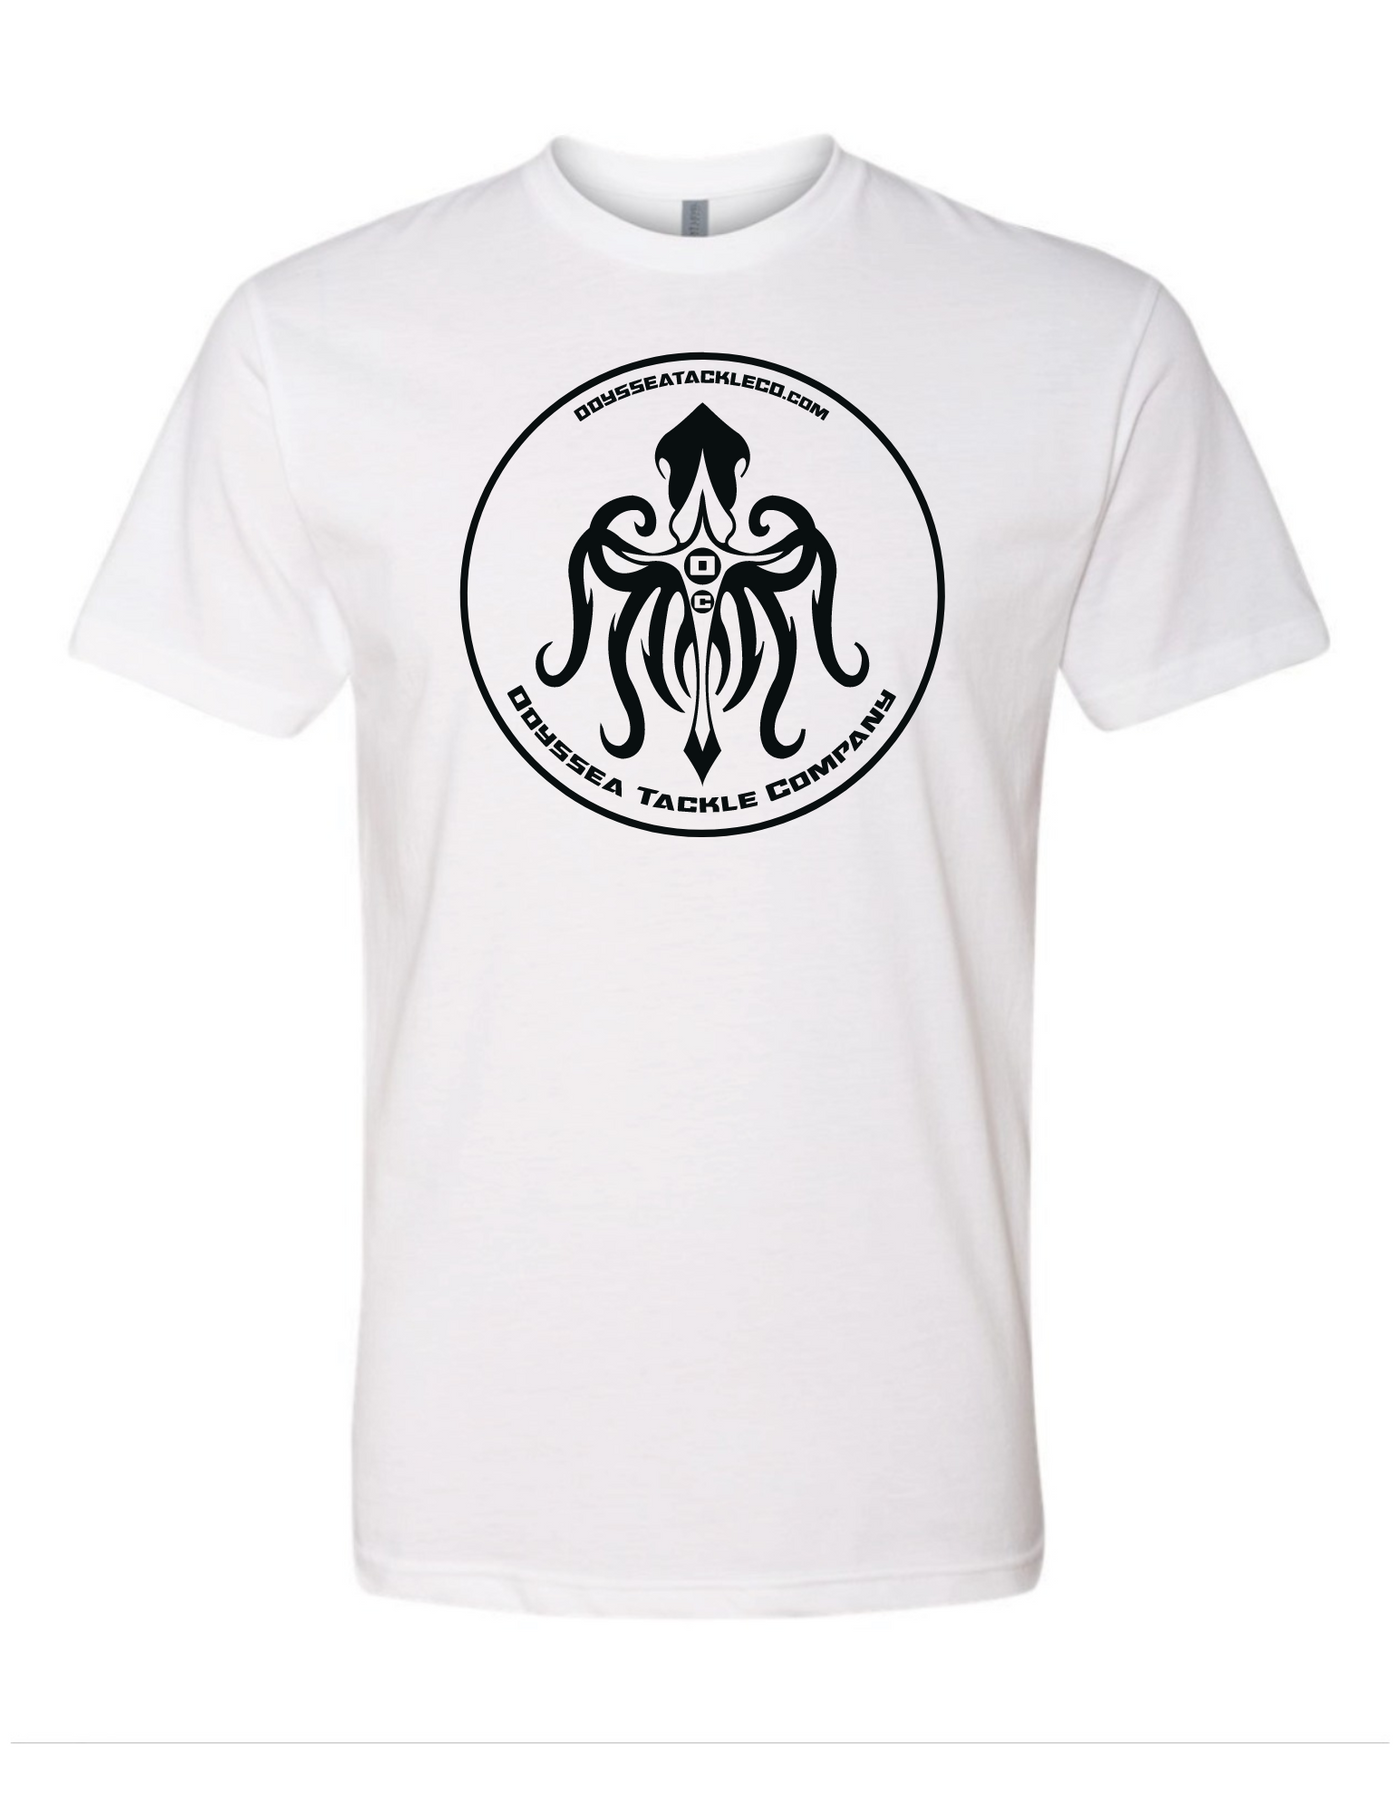 Short-Sleeve Kraken T-shirt